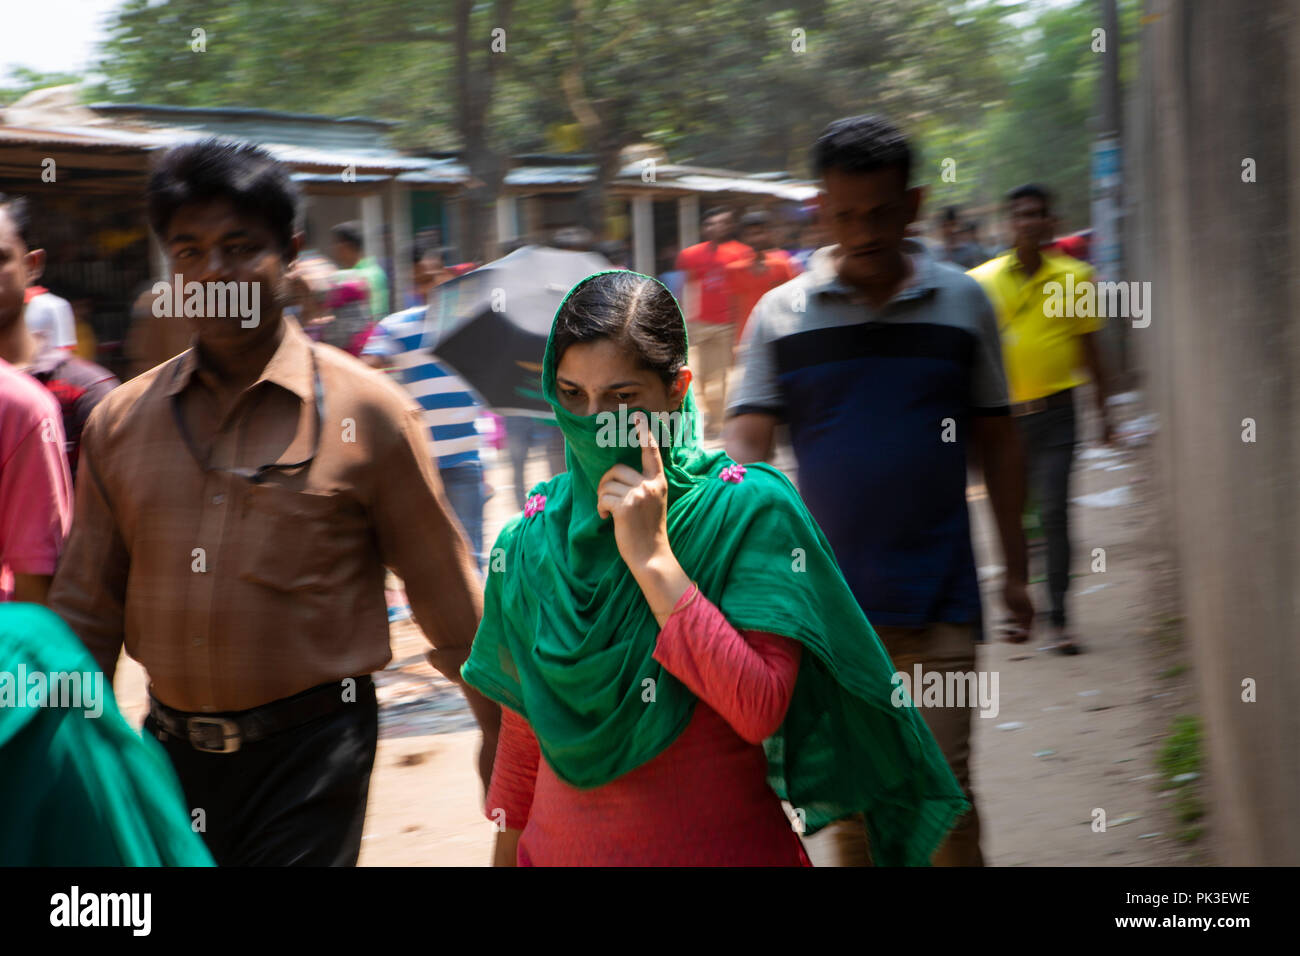 Une femme à l'aide de son sari pour protéger sa bouche de la pollution de l'air sur sa façon de travailler. Banque D'Images